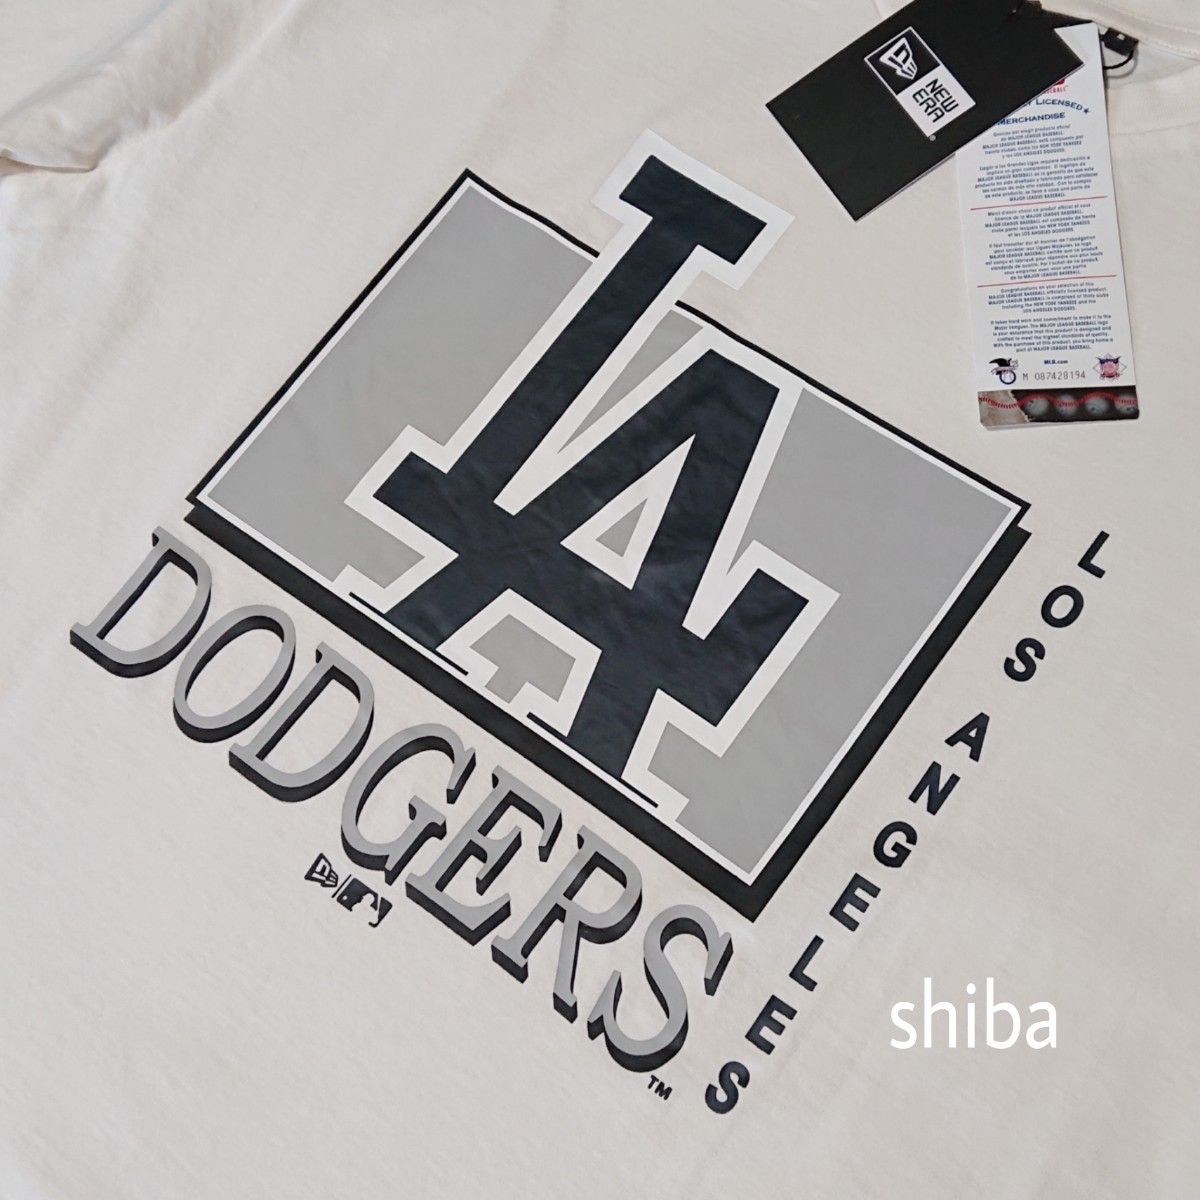 New Era ニューエラ 正規品 ドジャース LA WM tシャツ 半袖 ベージュ オフホワイト 白 大谷 海外2XLサイズ